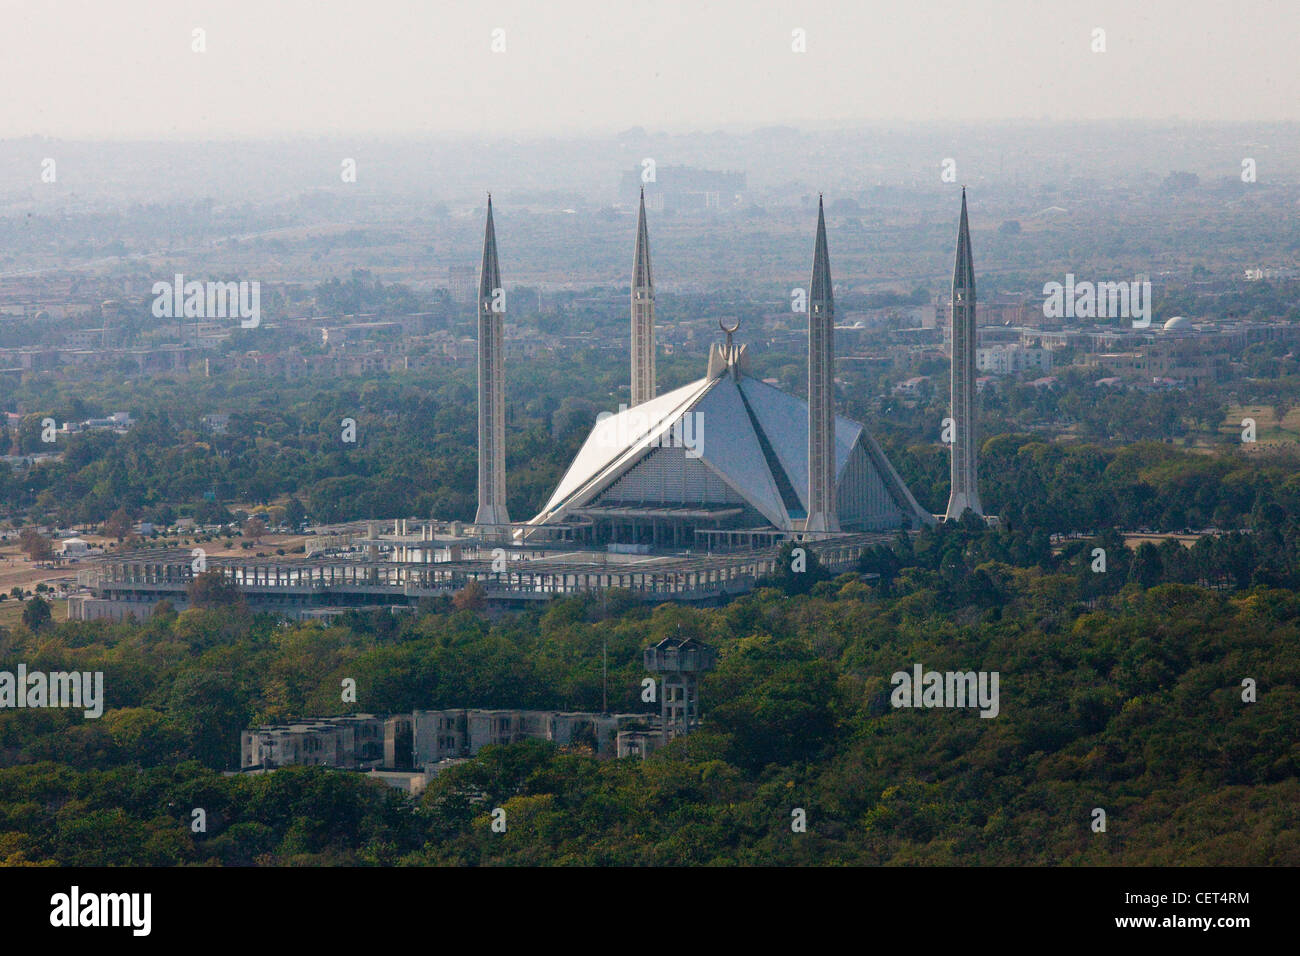 La mosquée Faisal, Islamabad, Pakistan Banque D'Images